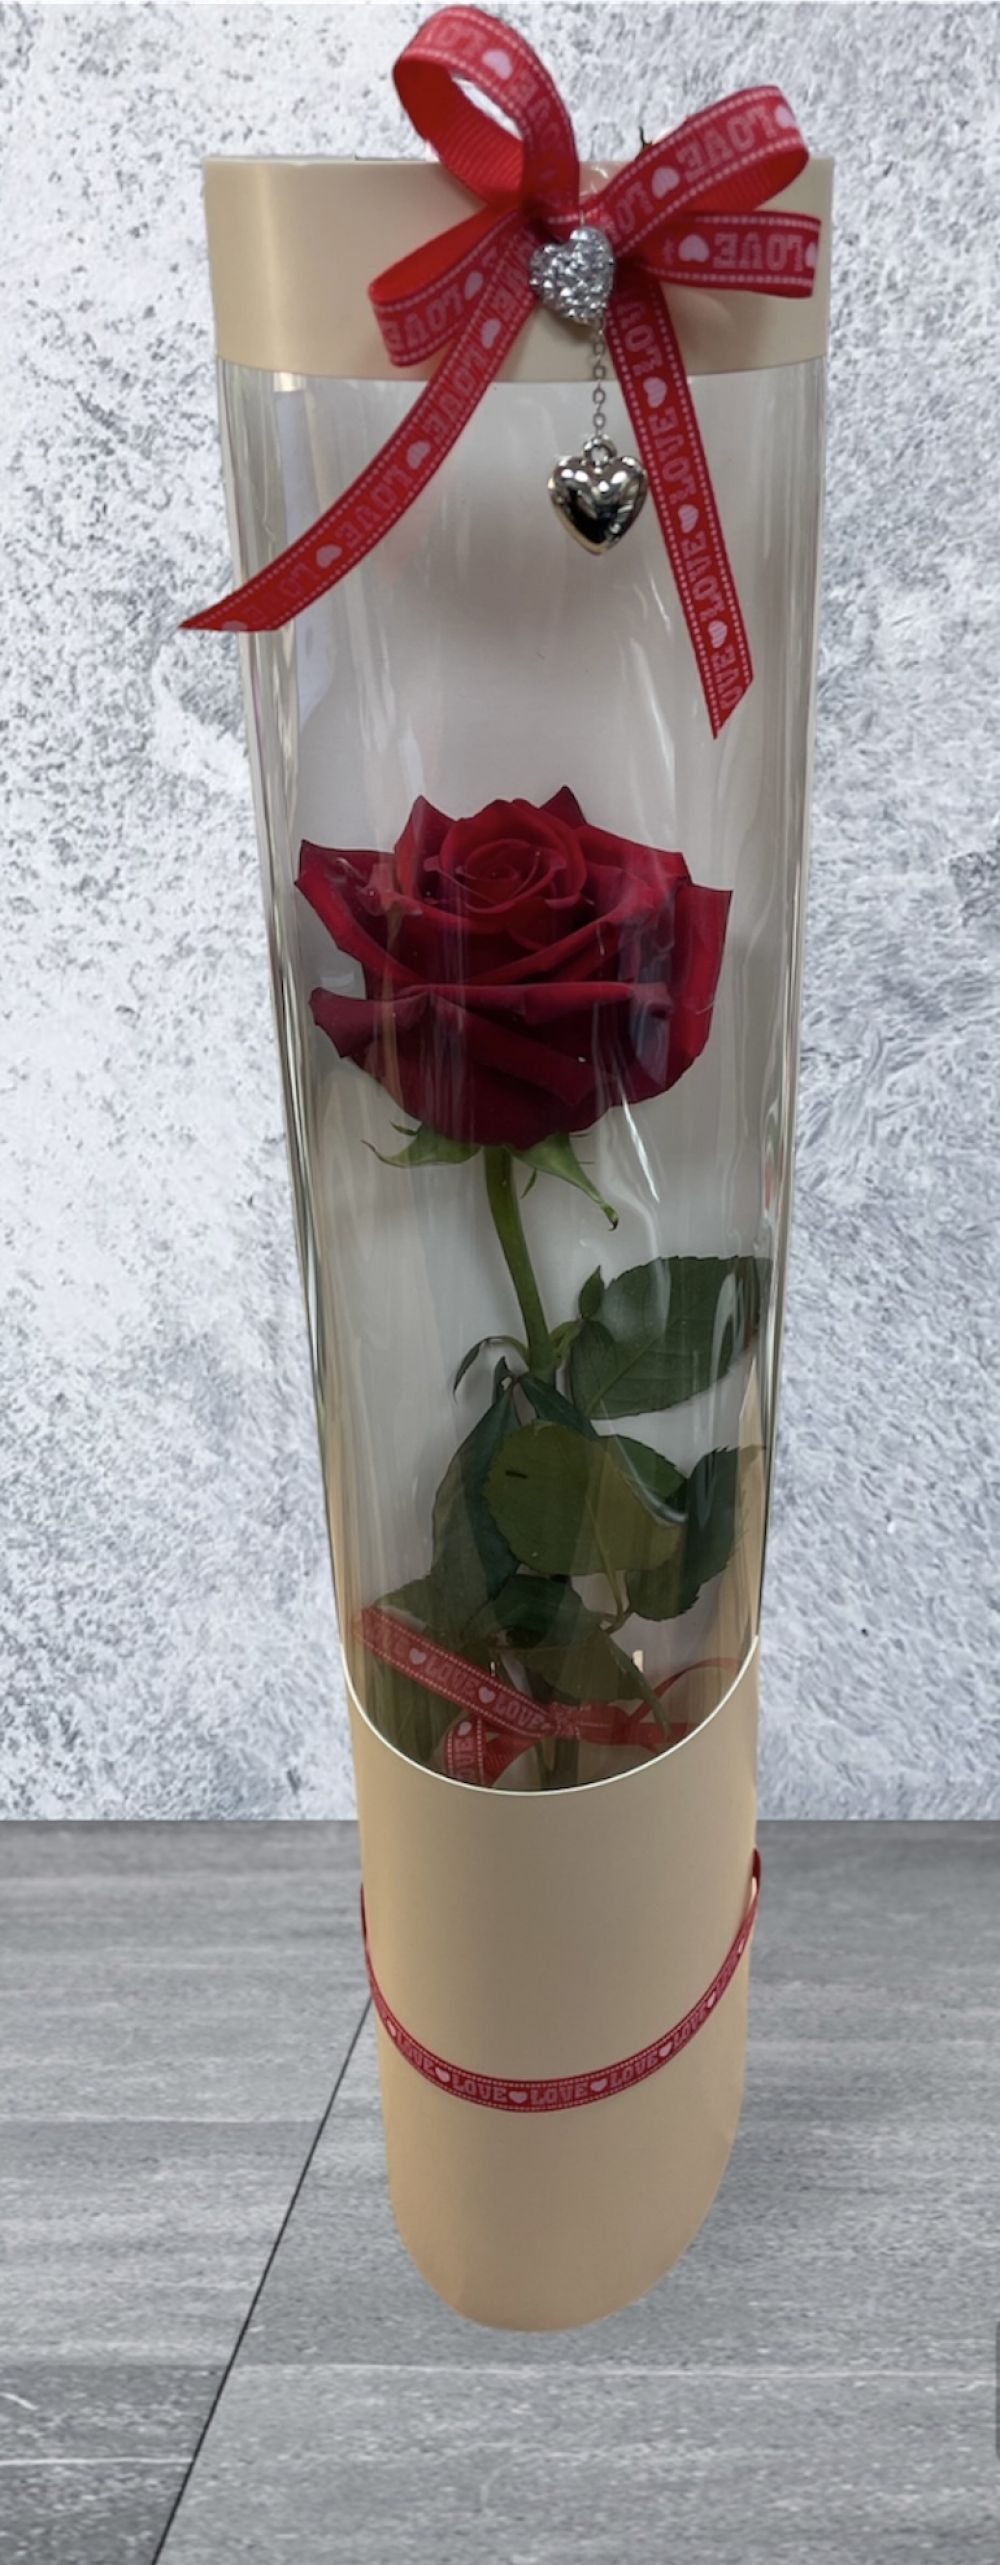 Single Rose Gift Tube